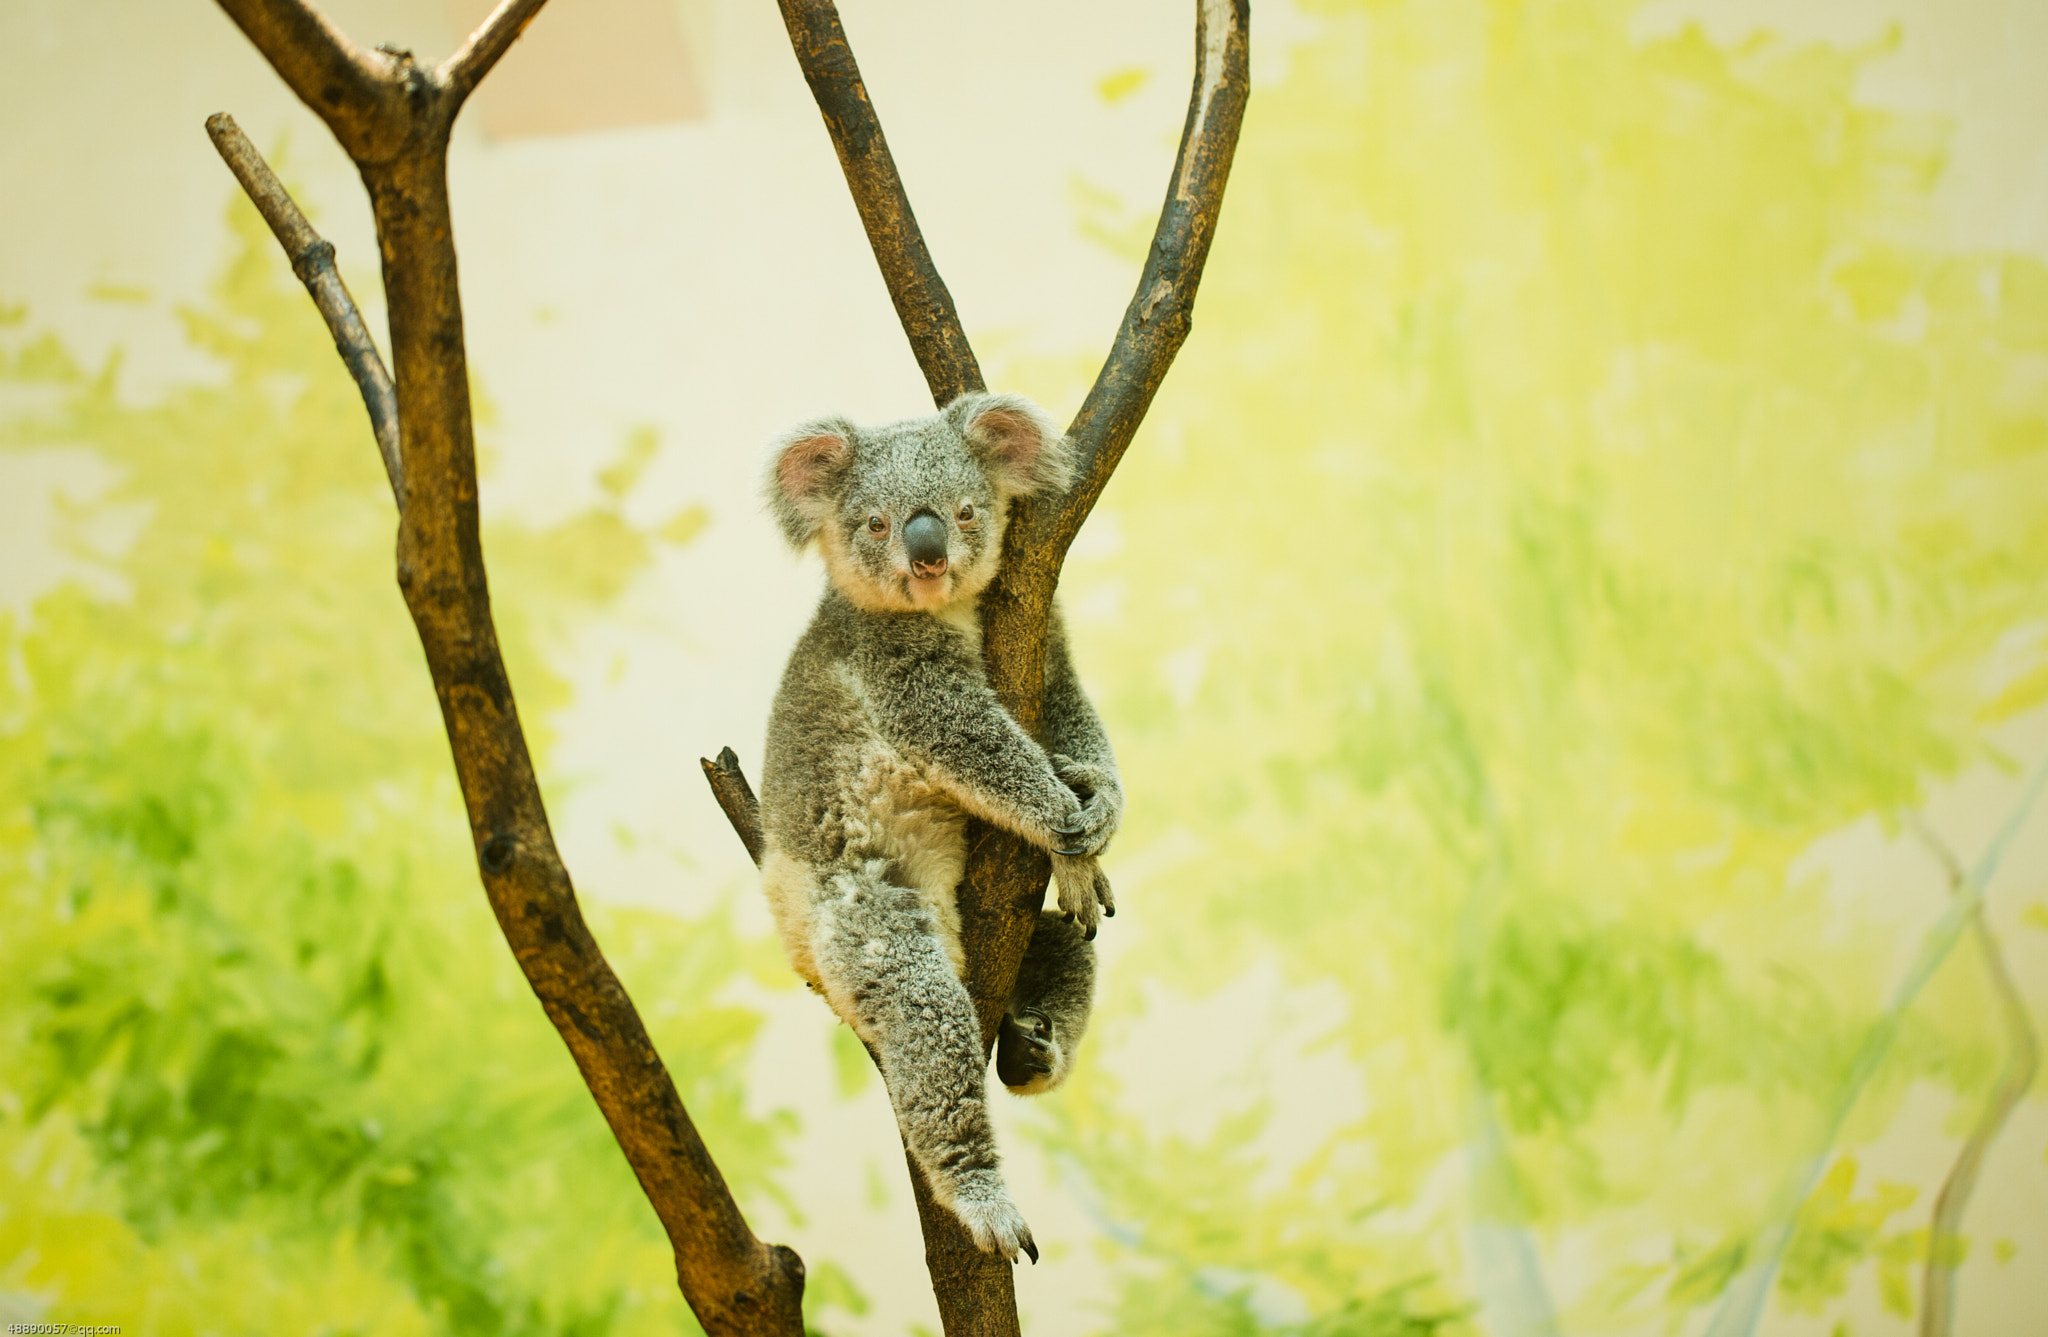 Canon EOS 6D sample photo. The koala photography